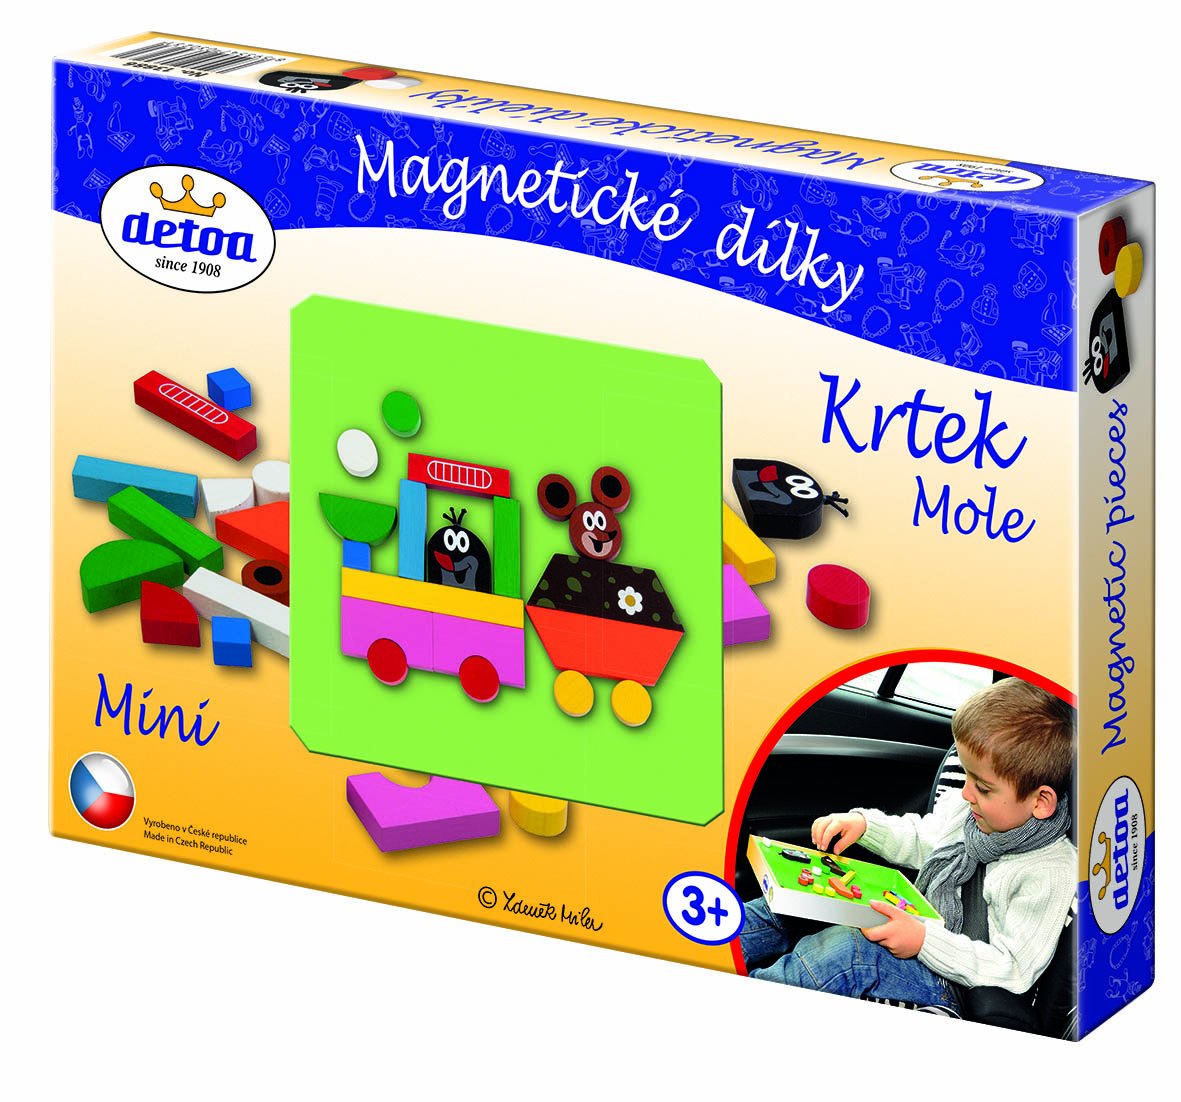 Detoa 13886 Magnetic Puzzle Mole Mini